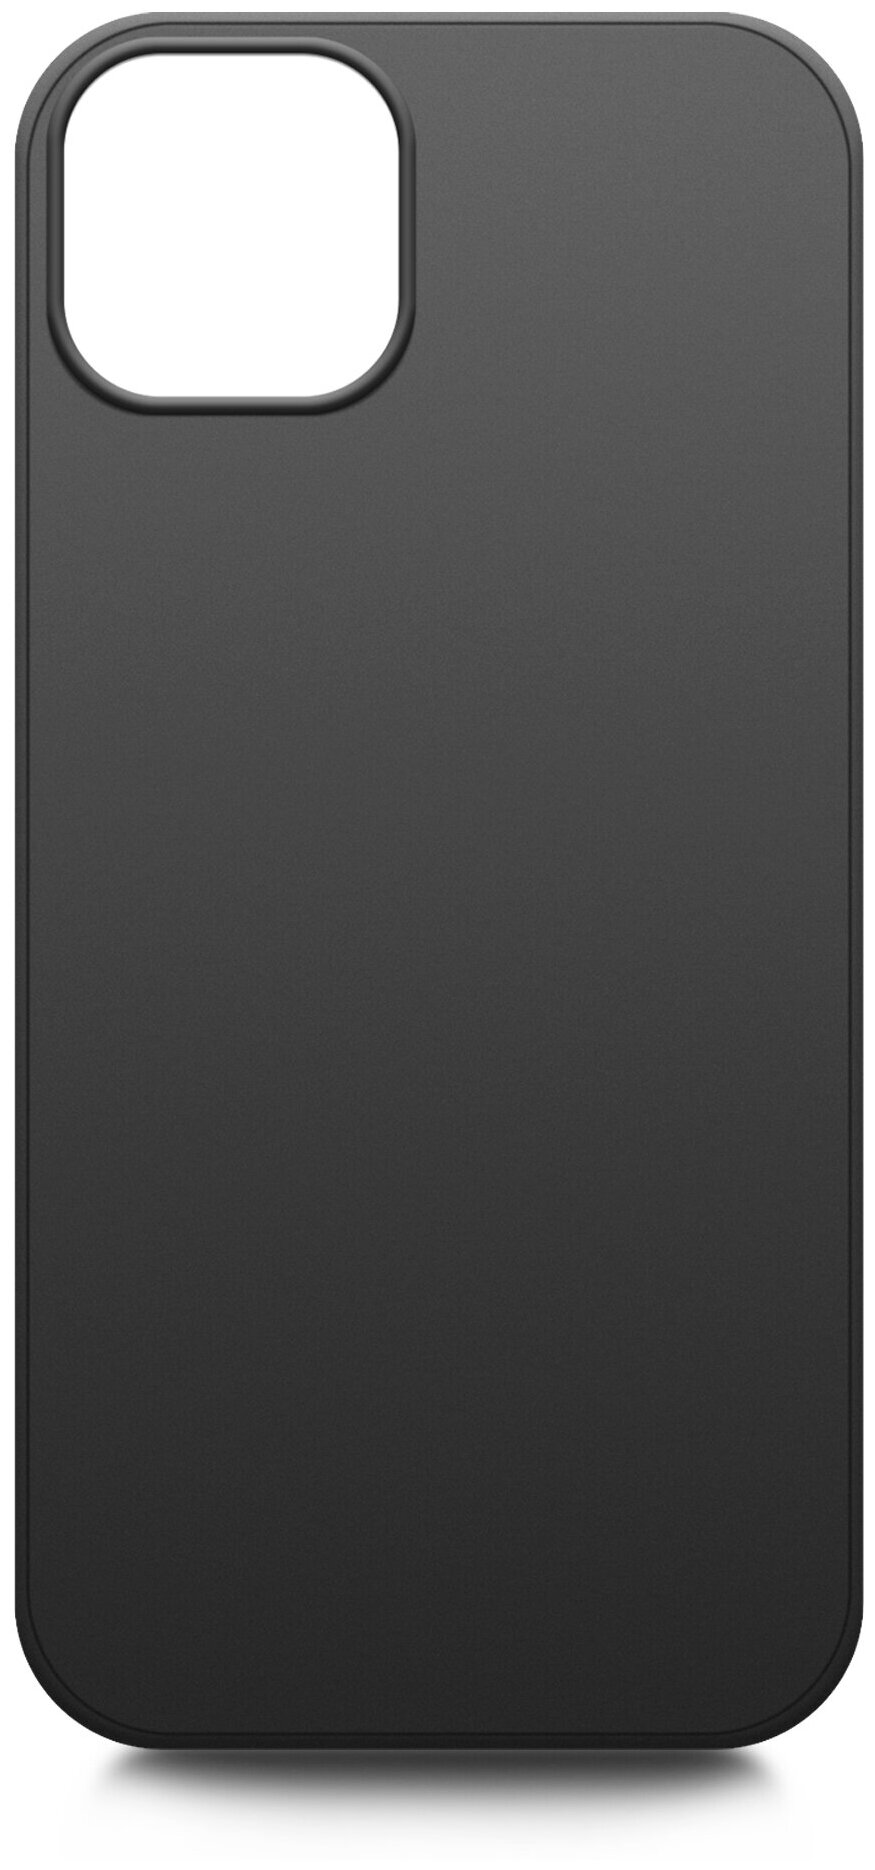 Чехол силиконовый на Apple iPhone 13 mini (Эпл Айфон 13 мини ) черный накладка защитная, Brozo